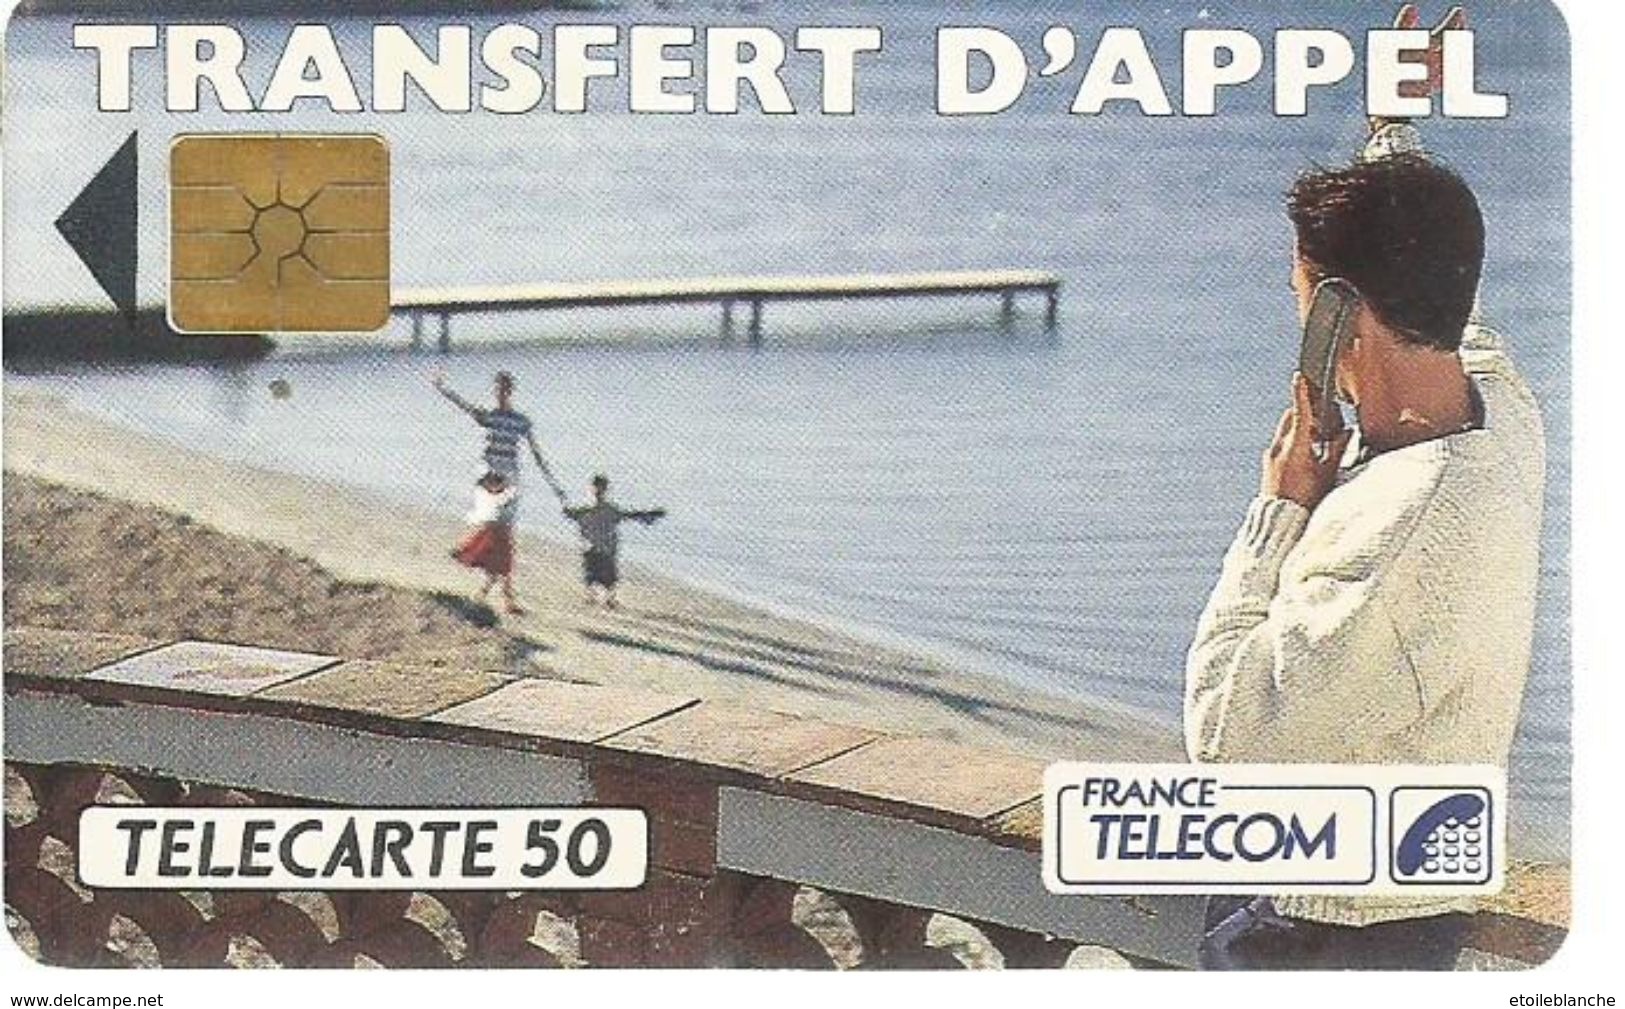 Telecarte France Telecom 1992 - Publicité, Transfert D'appel - Homme En Vacances, Plage, Famille - Telekom-Betreiber